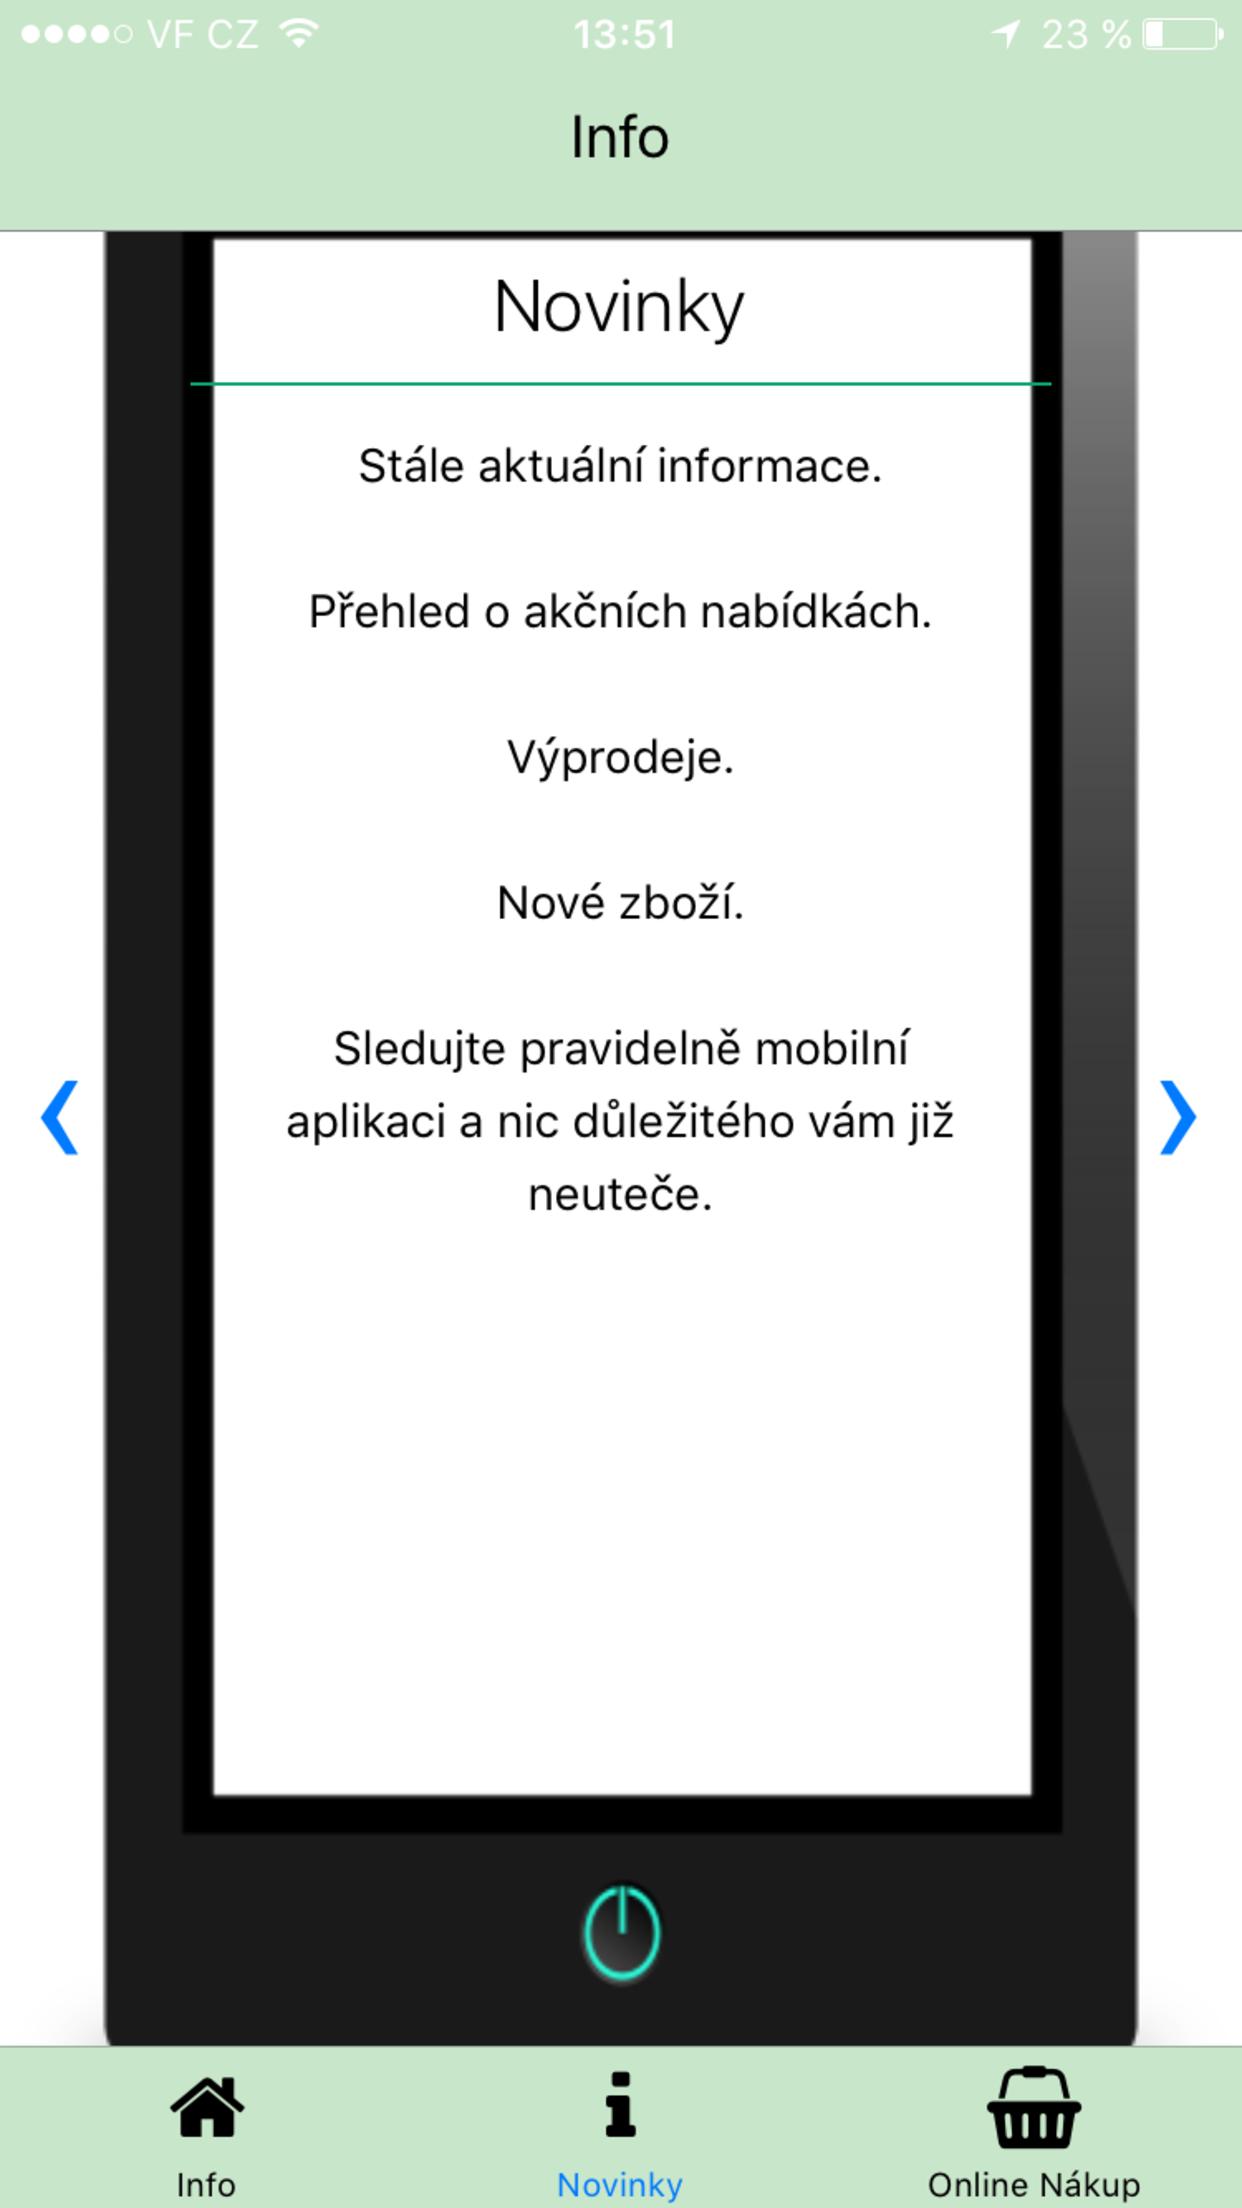 Online Nákup for Android - APK Download